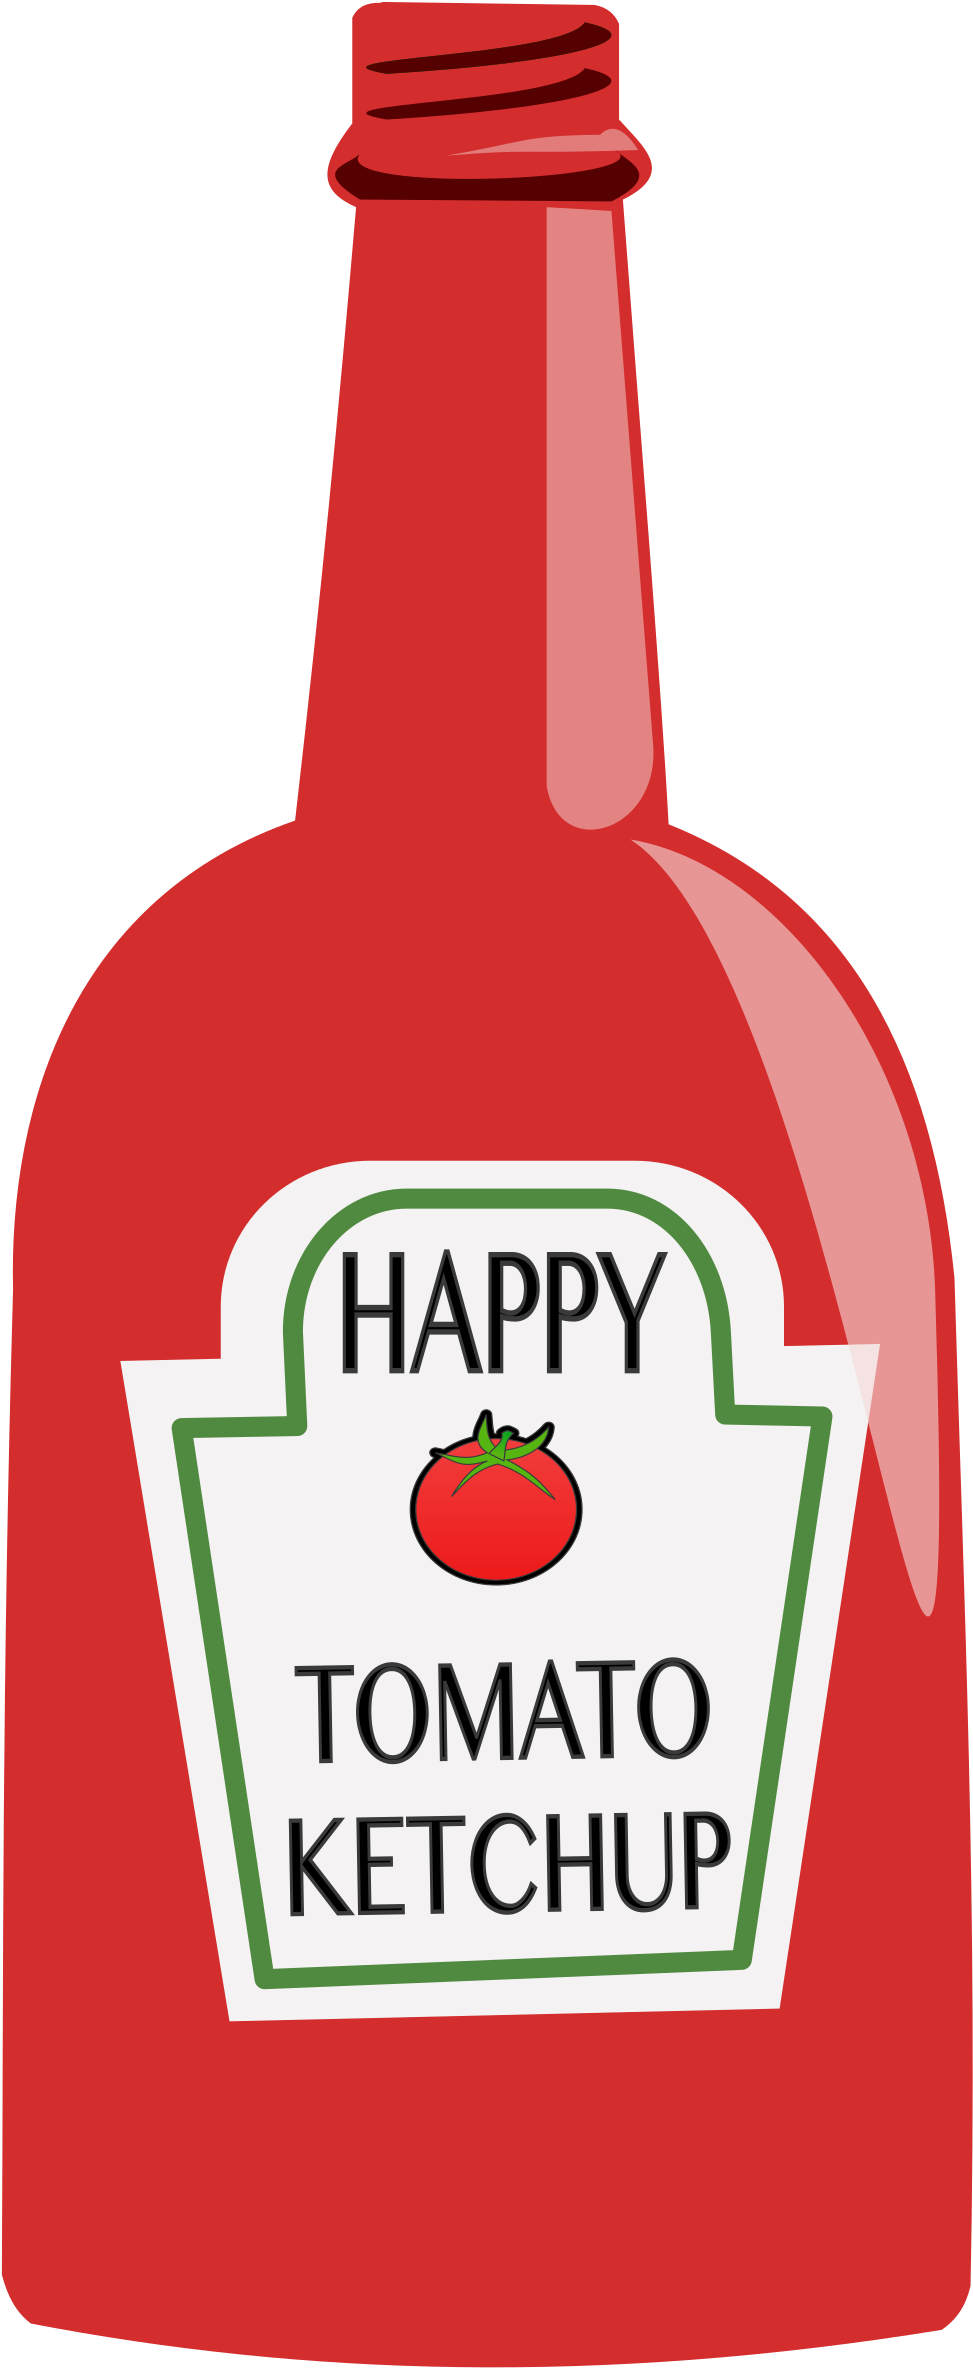 Download Clip Art Download Ketchup Clipart Png Ketchup Clipart Png Image With No Background Pngkey Com